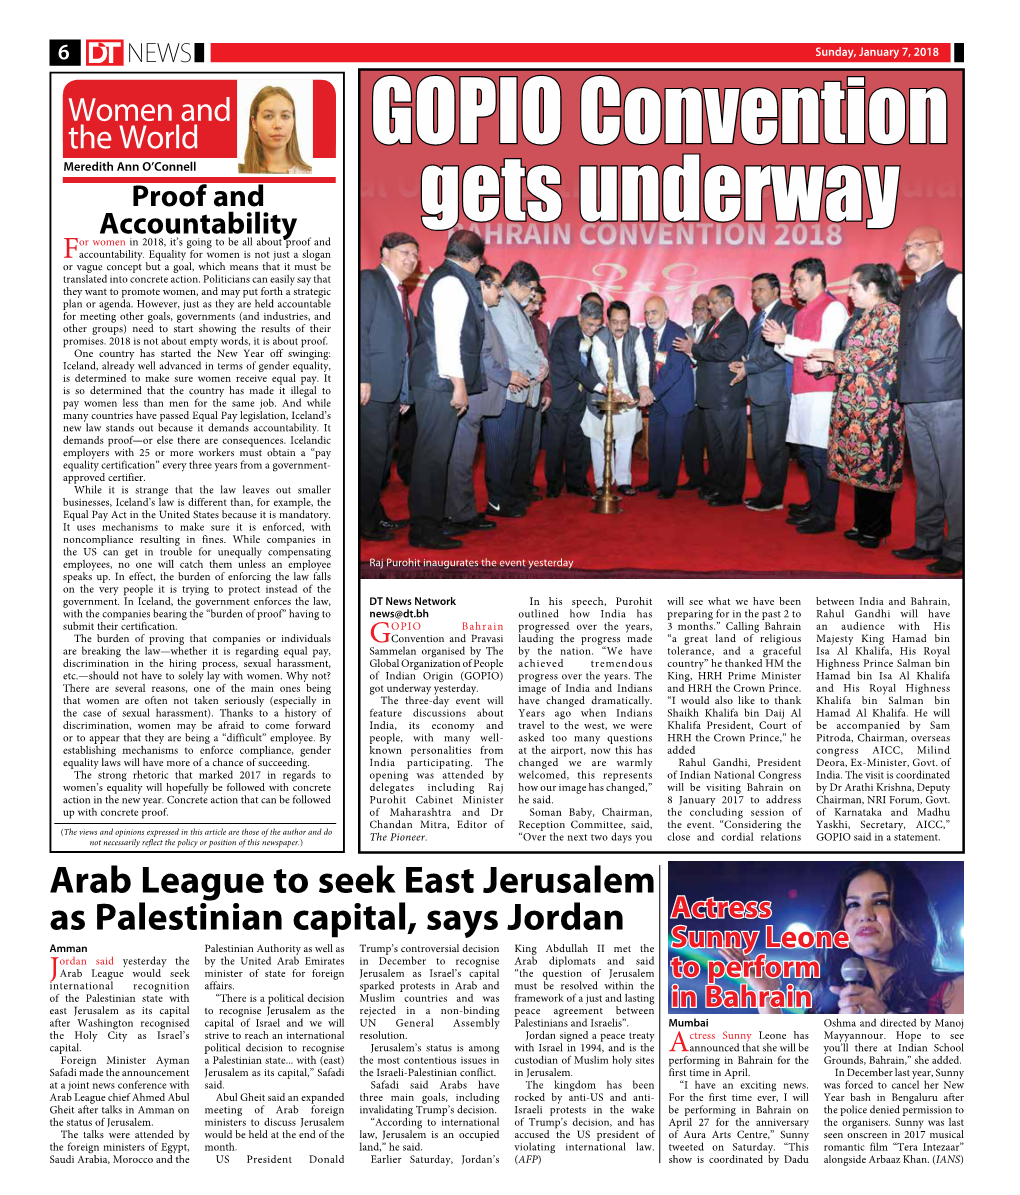 GOPIO Convention Gets Underway